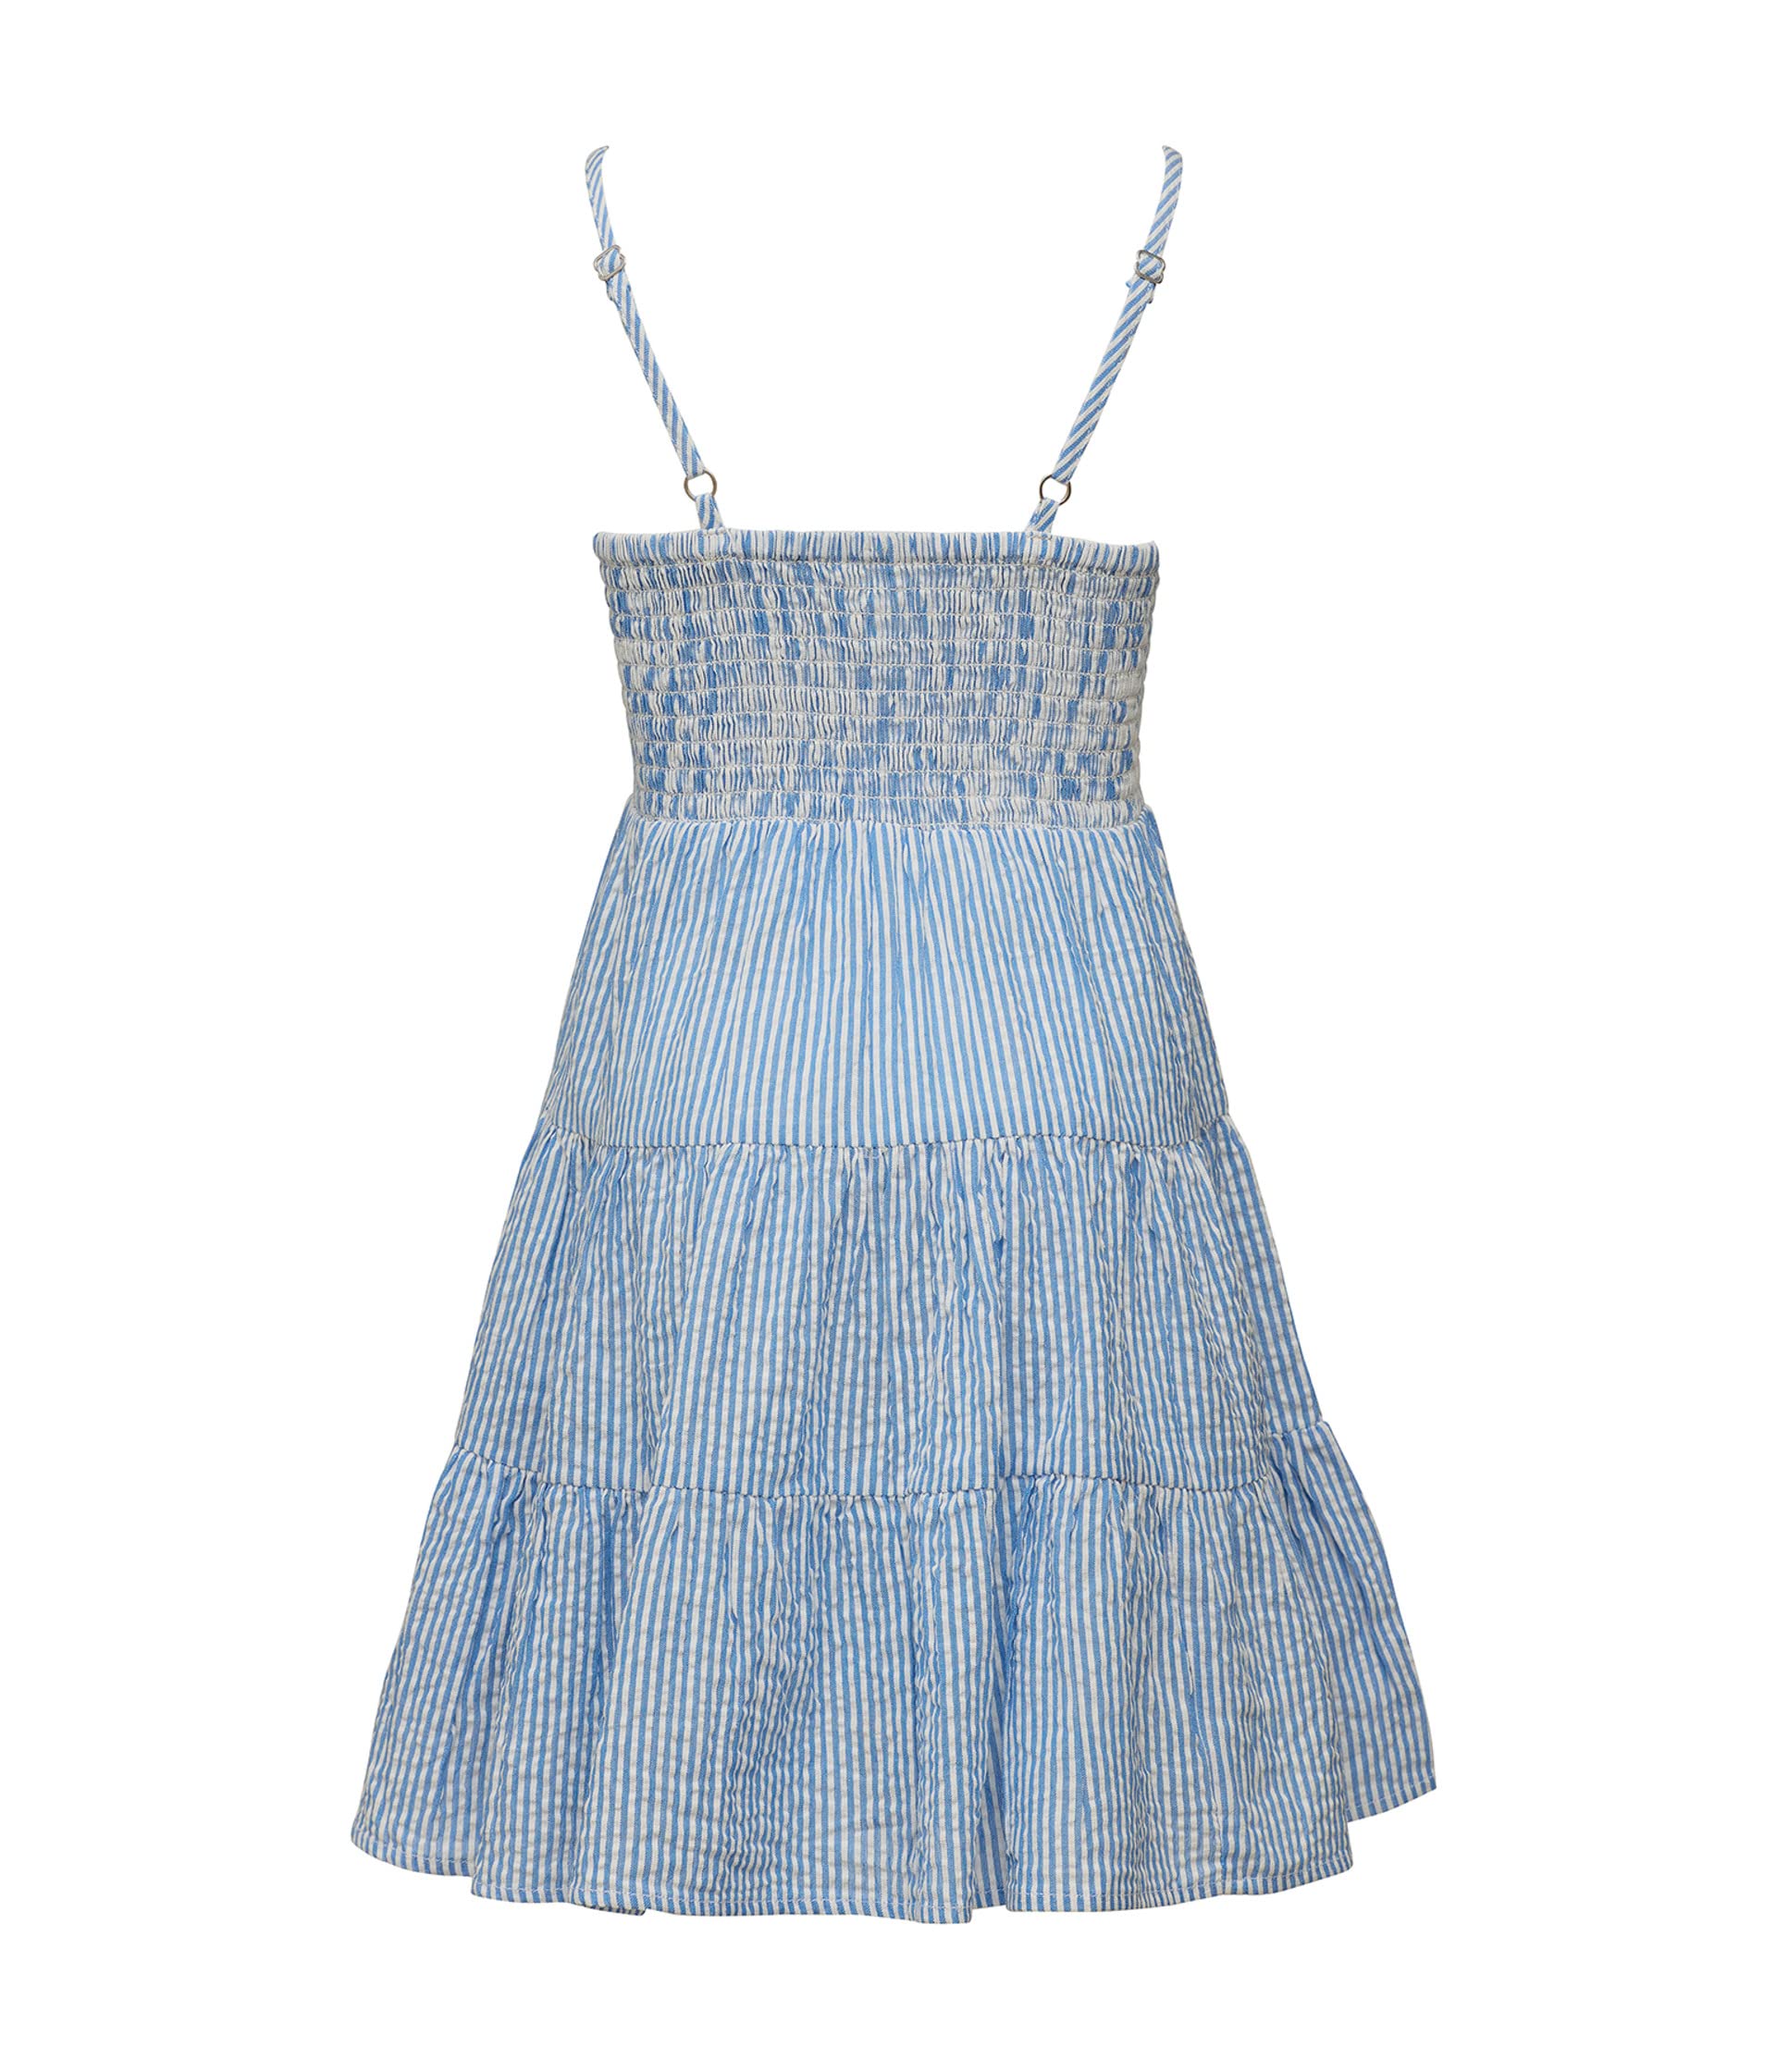 Пляжное платье в полоску василькового цвета (для маленьких/больших детей) Snapper Rock